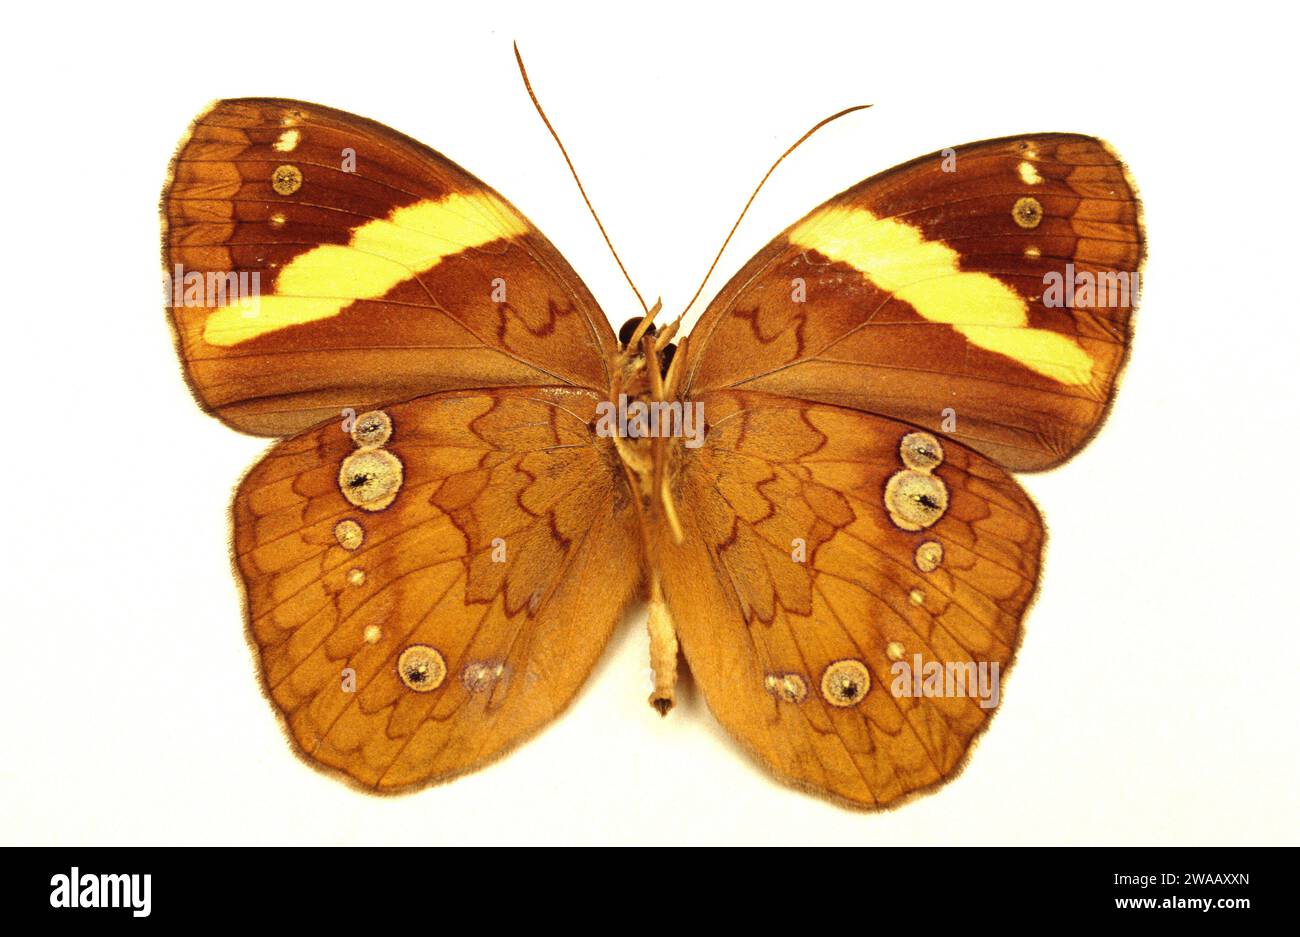 La ninfa a banda gialla (Xanthotaenia busiride) è una farfalla originaria del sud-est asiatico. Adulto, lato ventrale. Foto Stock